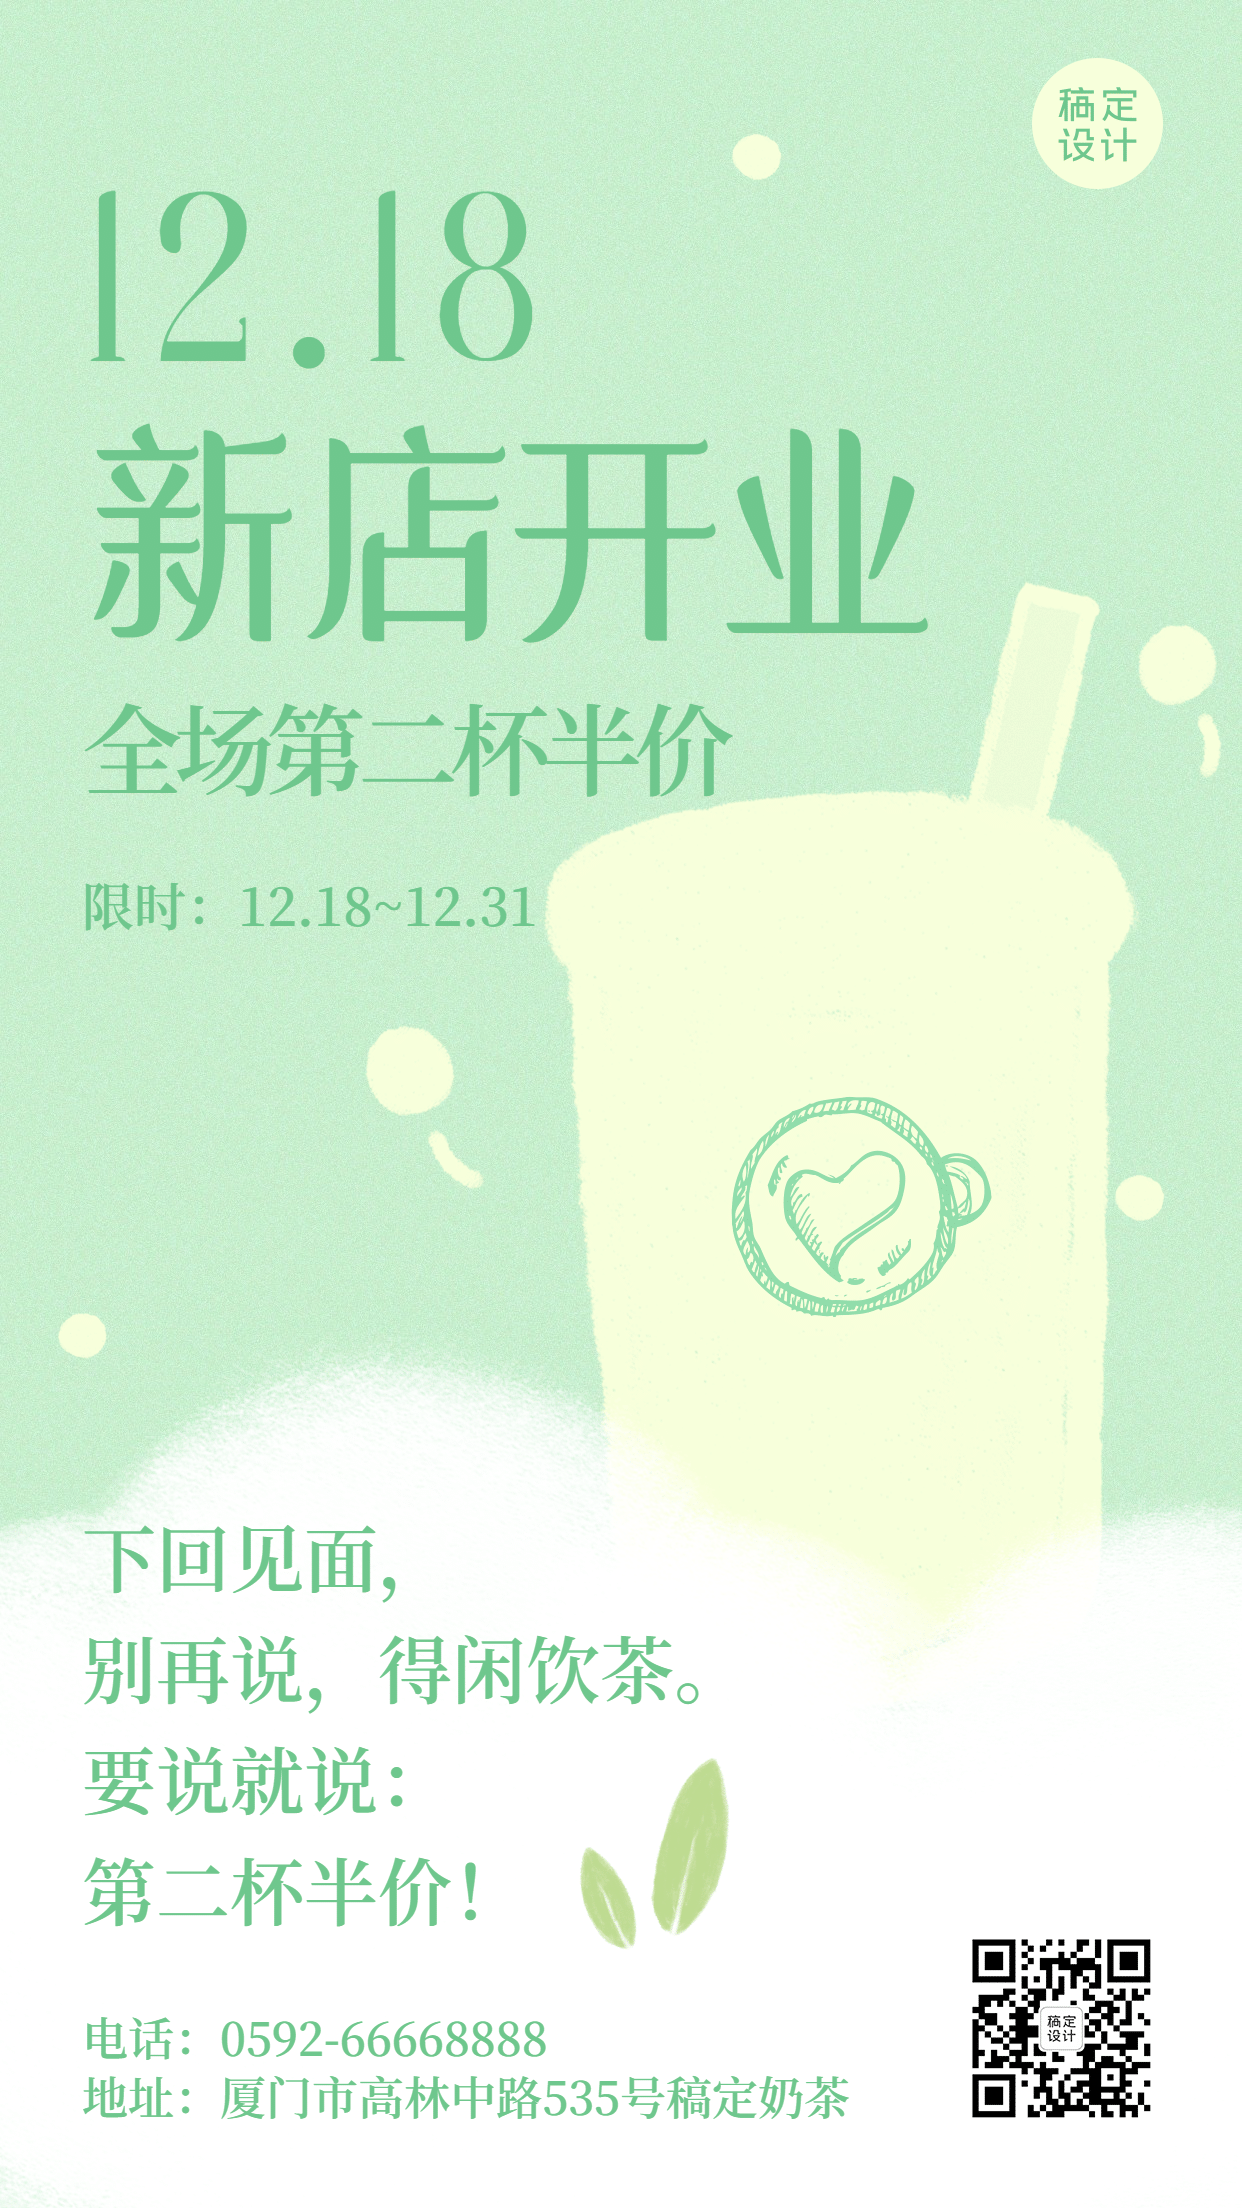 餐饮奶茶店开业活动海报预览效果